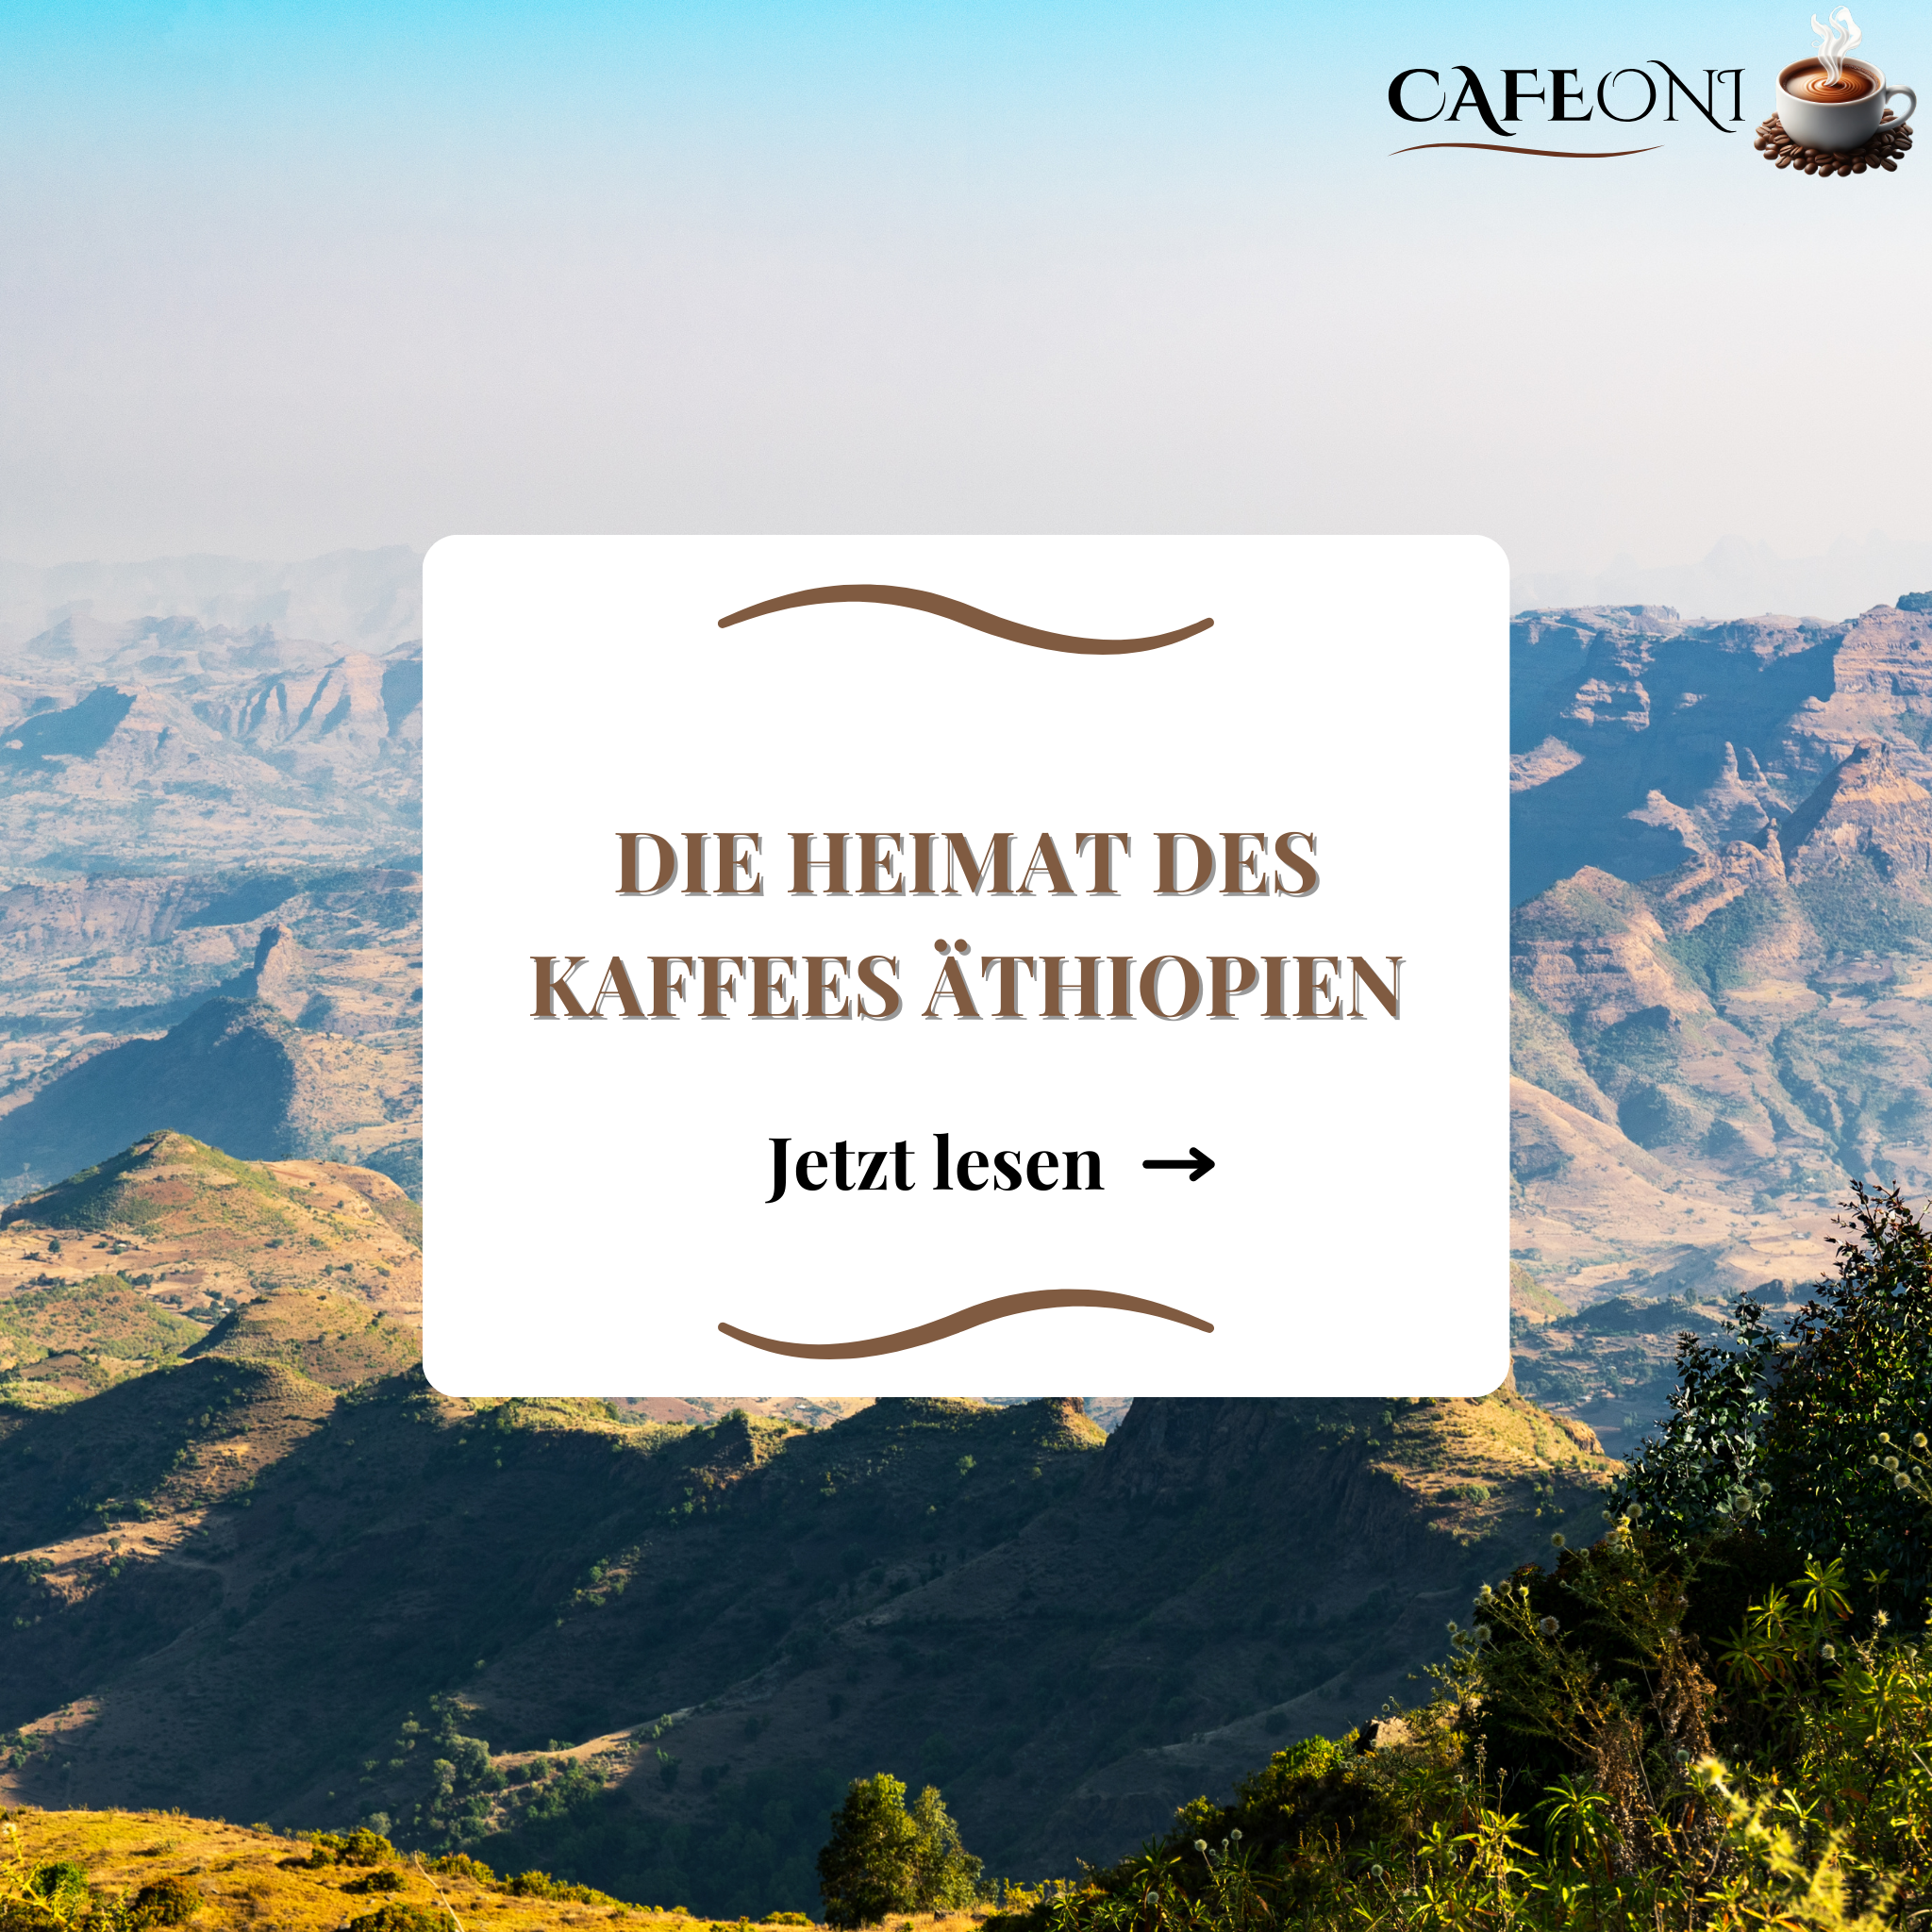 Die Heimat des Kaffees - Äthiopien.